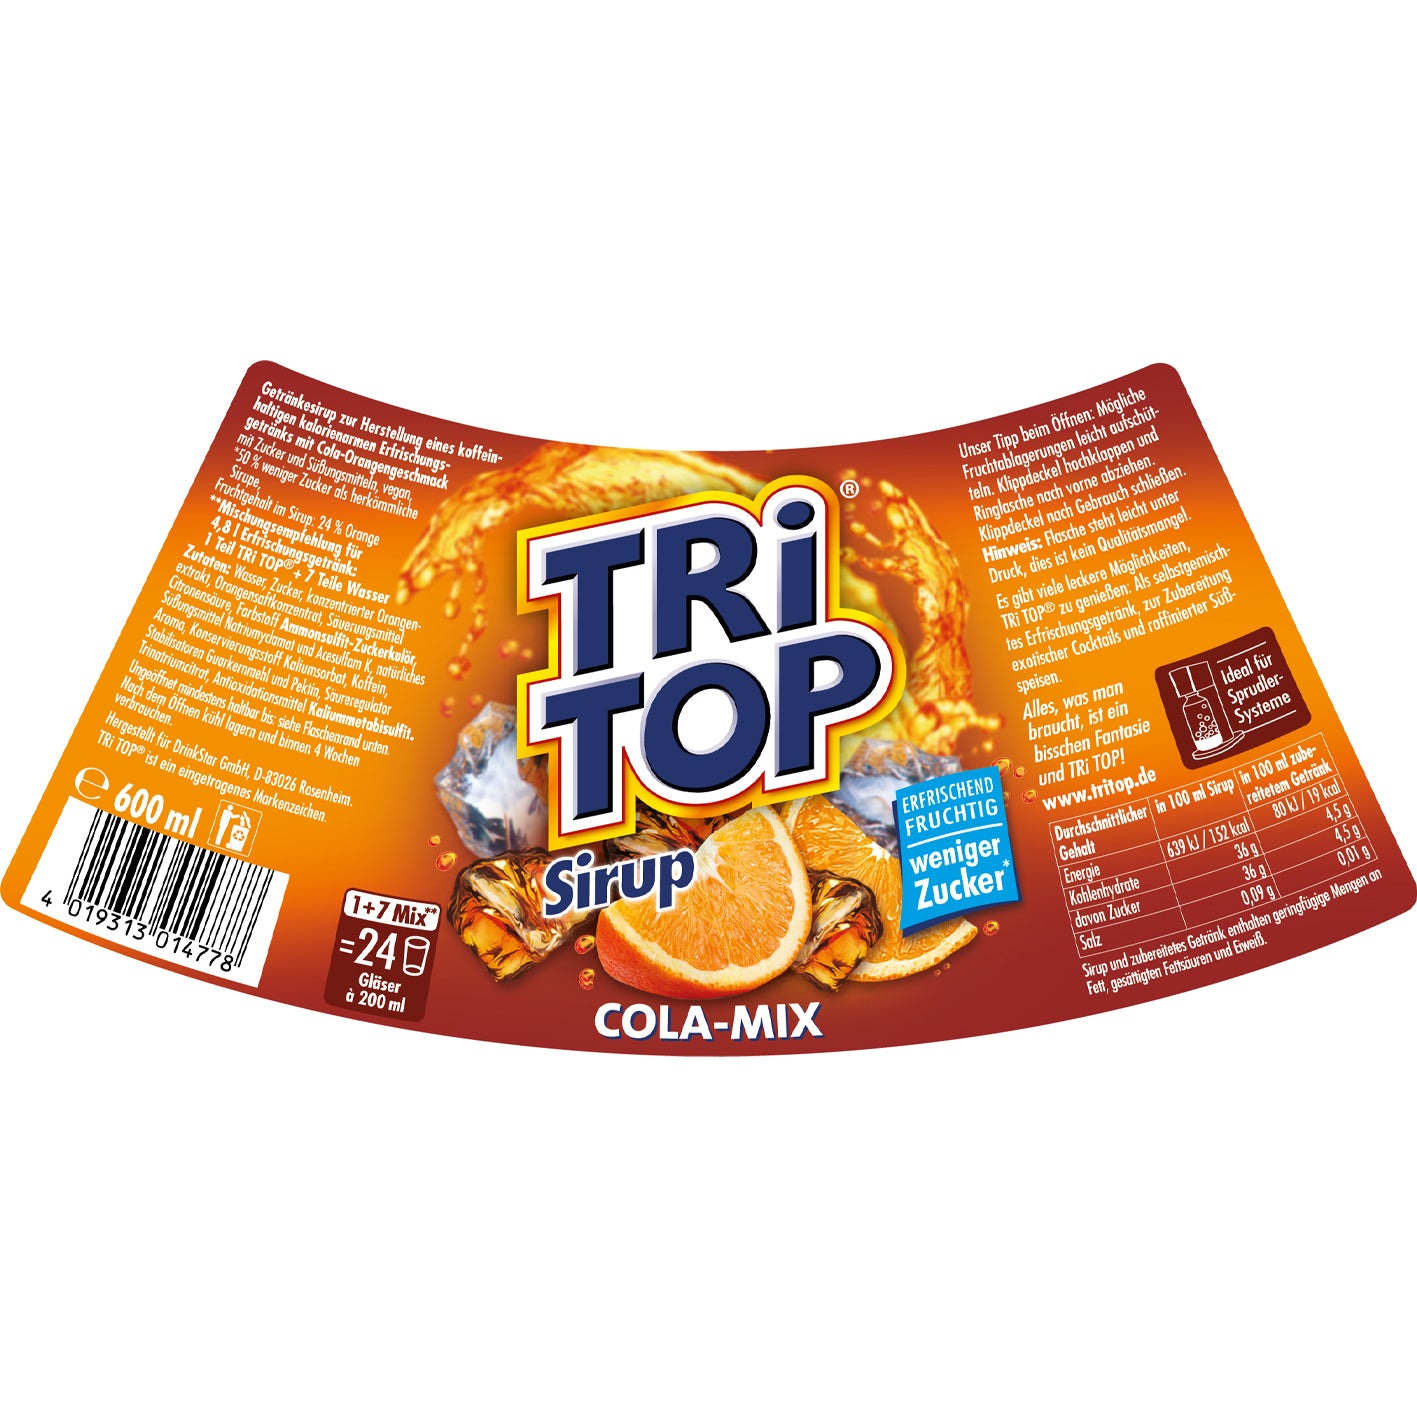 TRi TOP Sirup Sirup 3er-Set (Kirsche + Zitrone-Limette + Orange-Cola Mix)